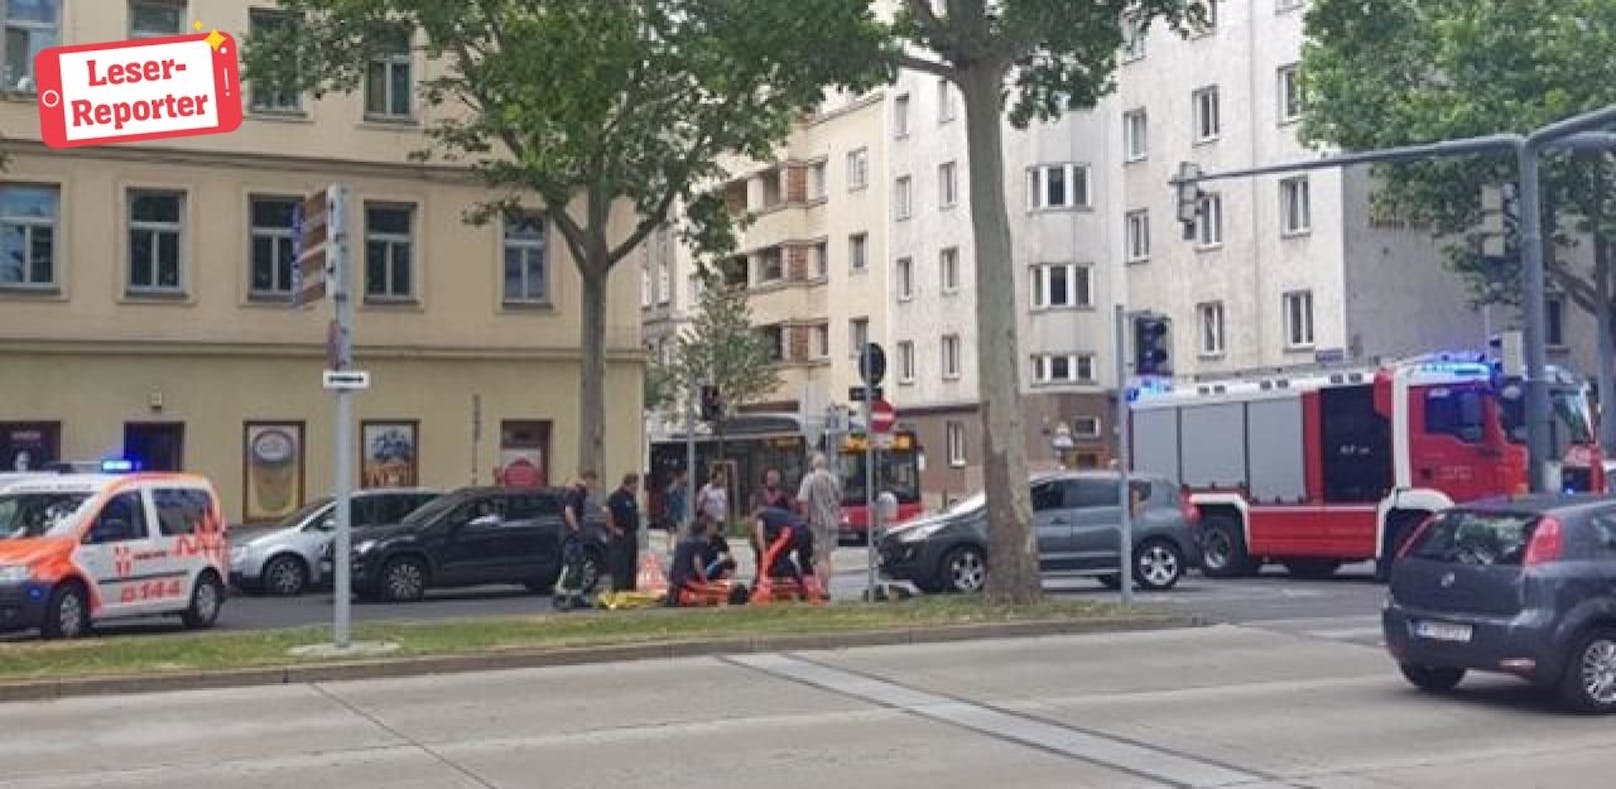 Rettungs-Einsatz in der Lassallestraße (Wien-Leopoldstadt)